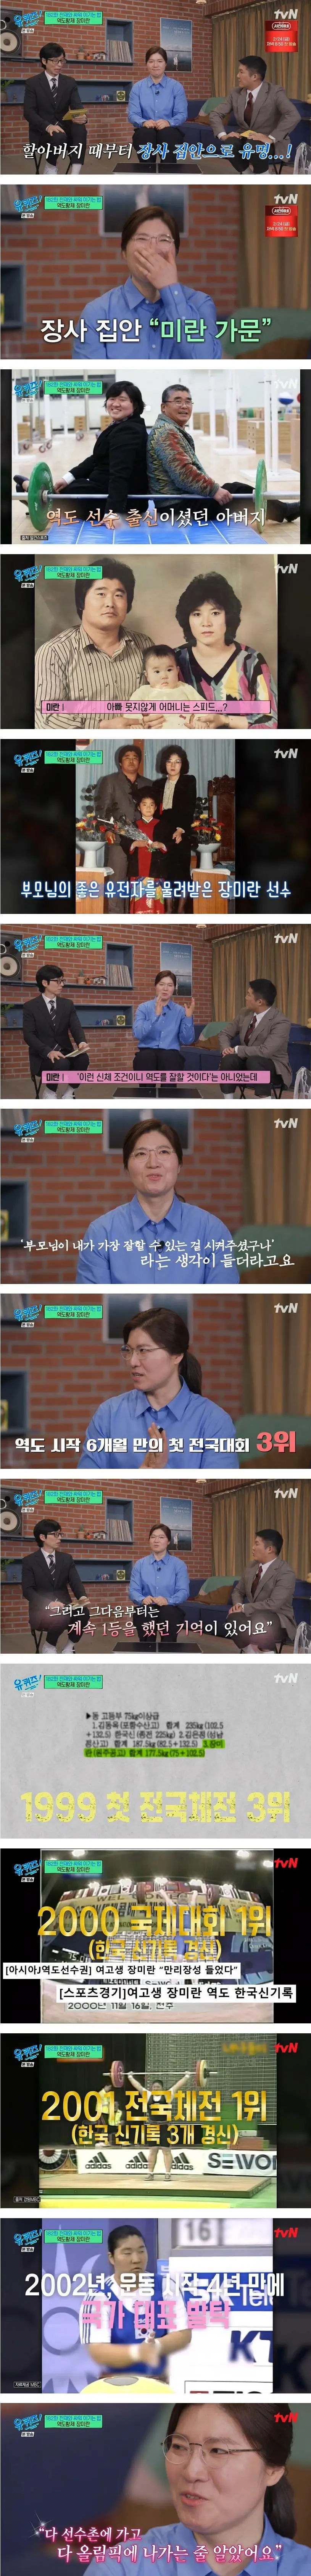 Jang Mi-ran's family history